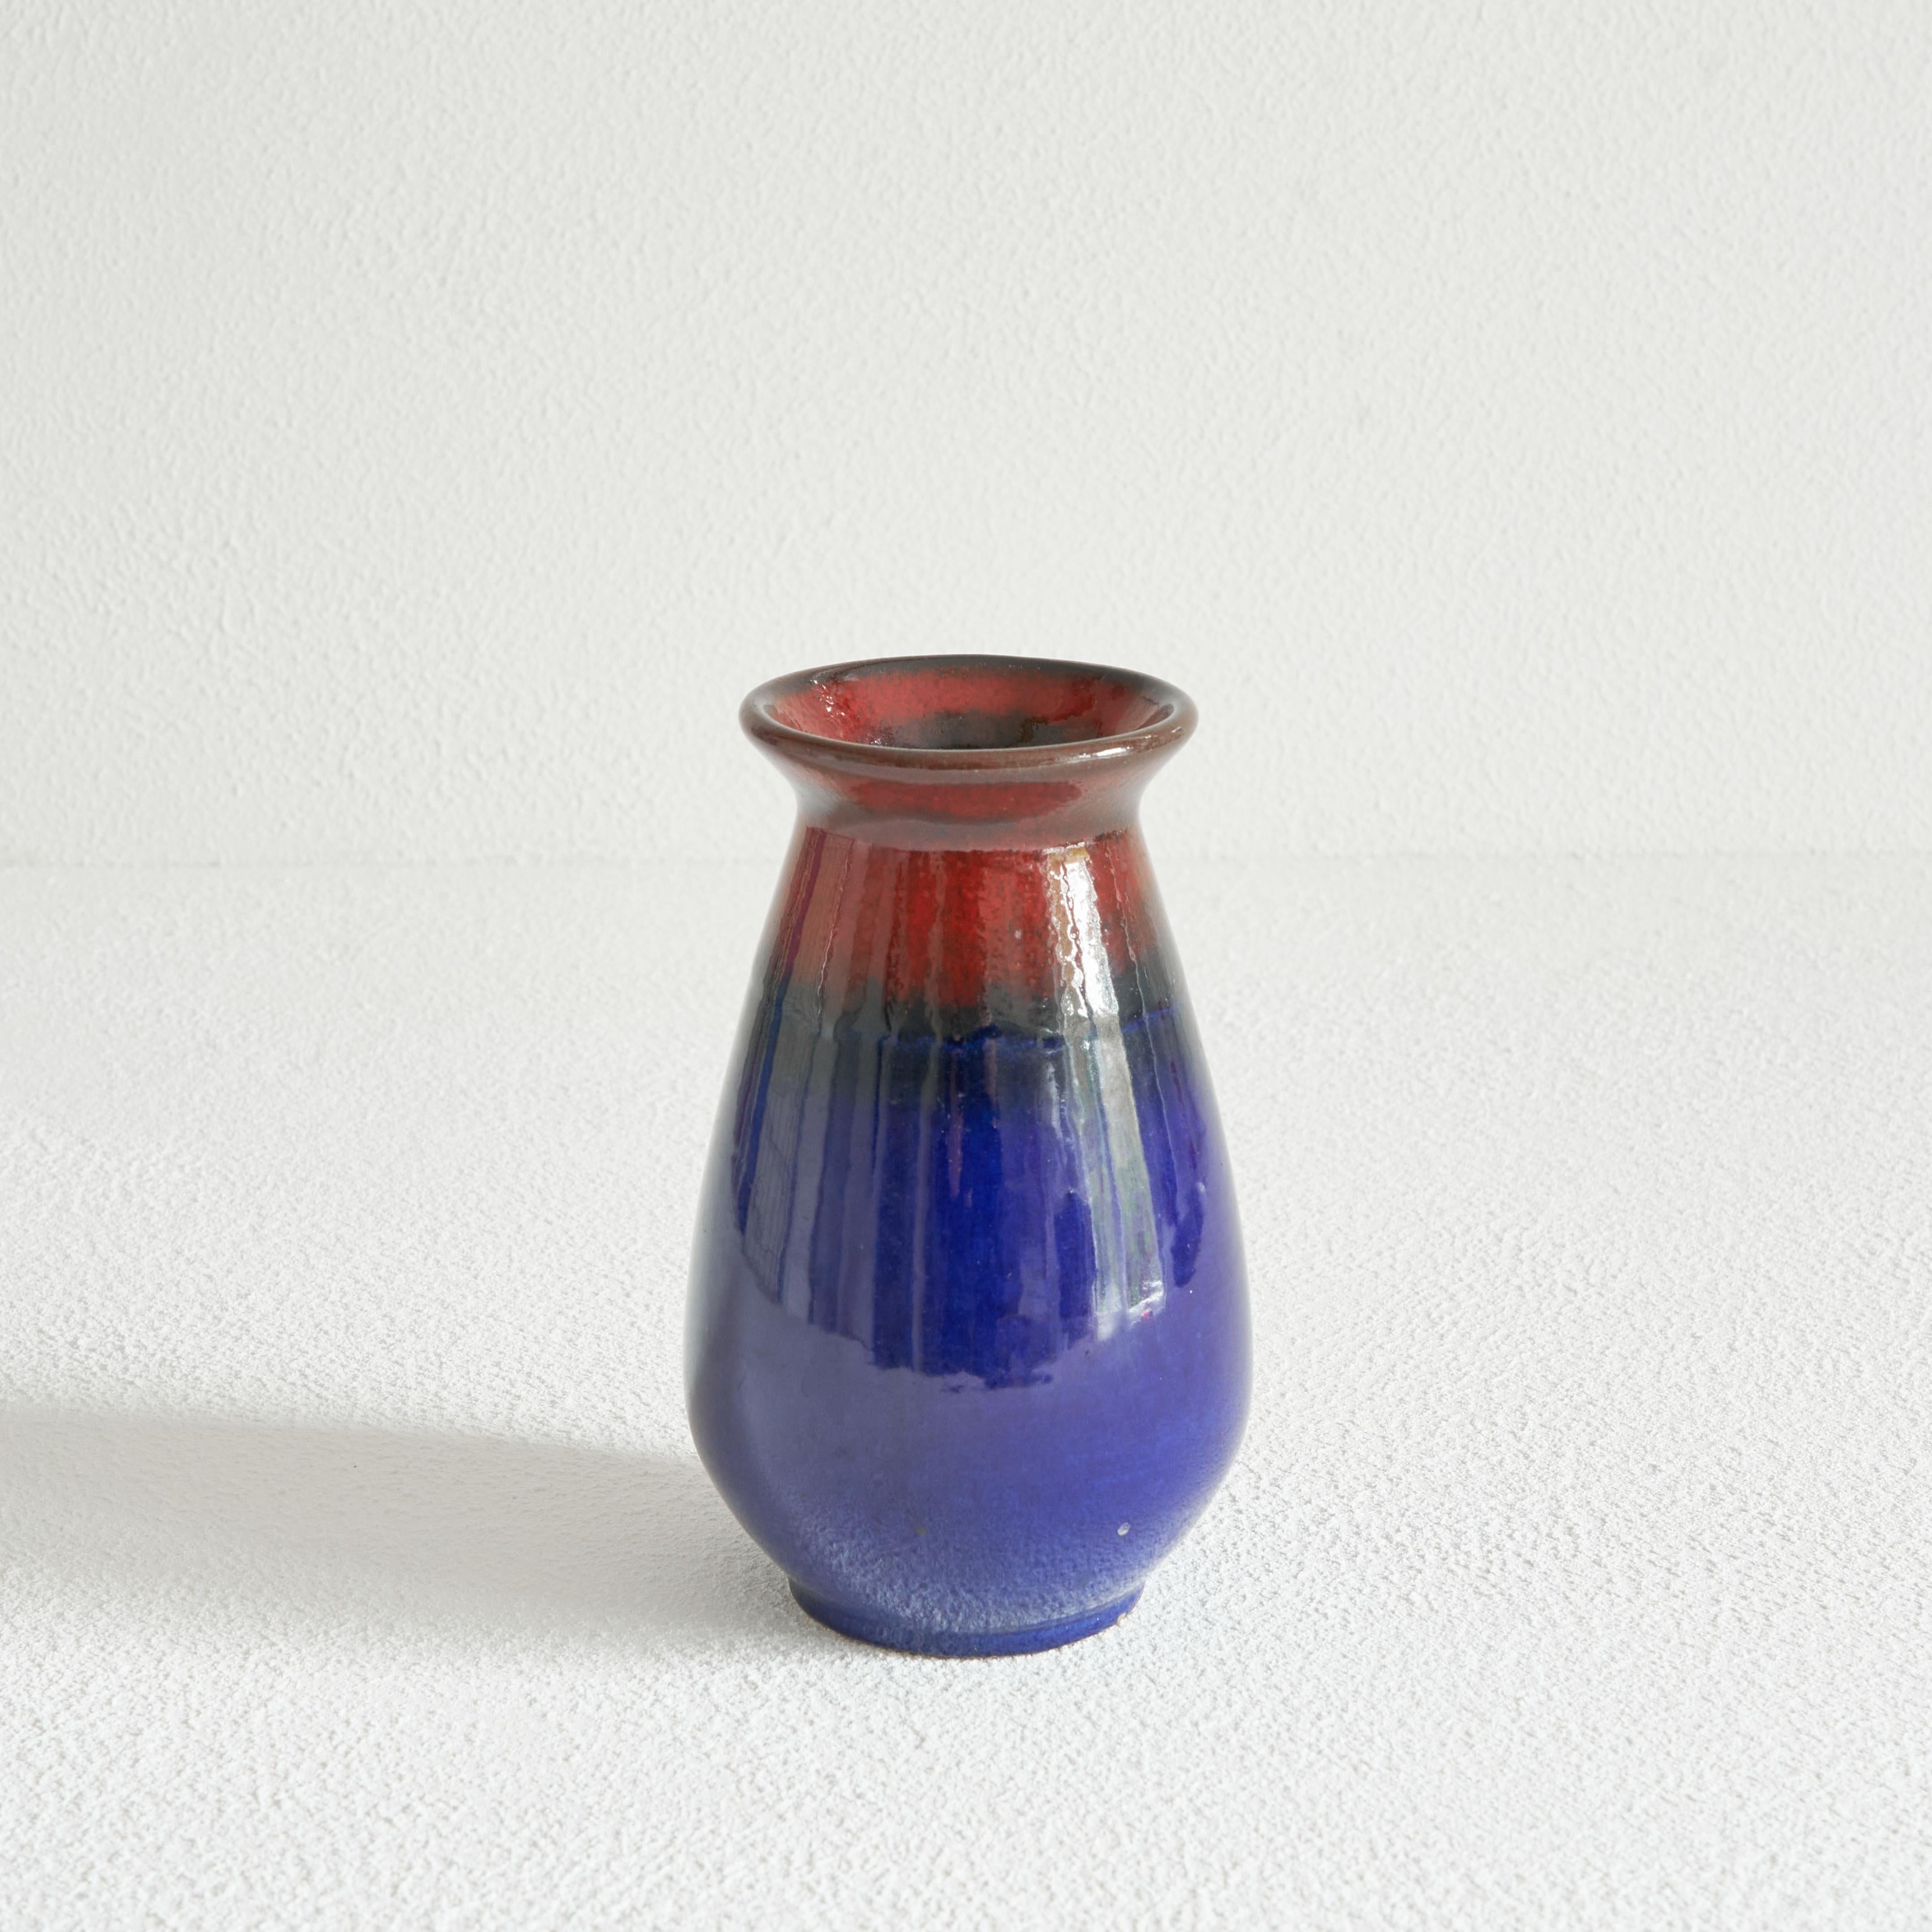 Vase en poterie de studio du milieu du siècle par Jasba Keramik, Allemagne, années 1960.

Merveilleux vase coloré en poterie Studio d'Allemagne de l'Ouest par Jasba Keramik. Des couleurs profondes, allant du bleu au rouge, avec une glaçure